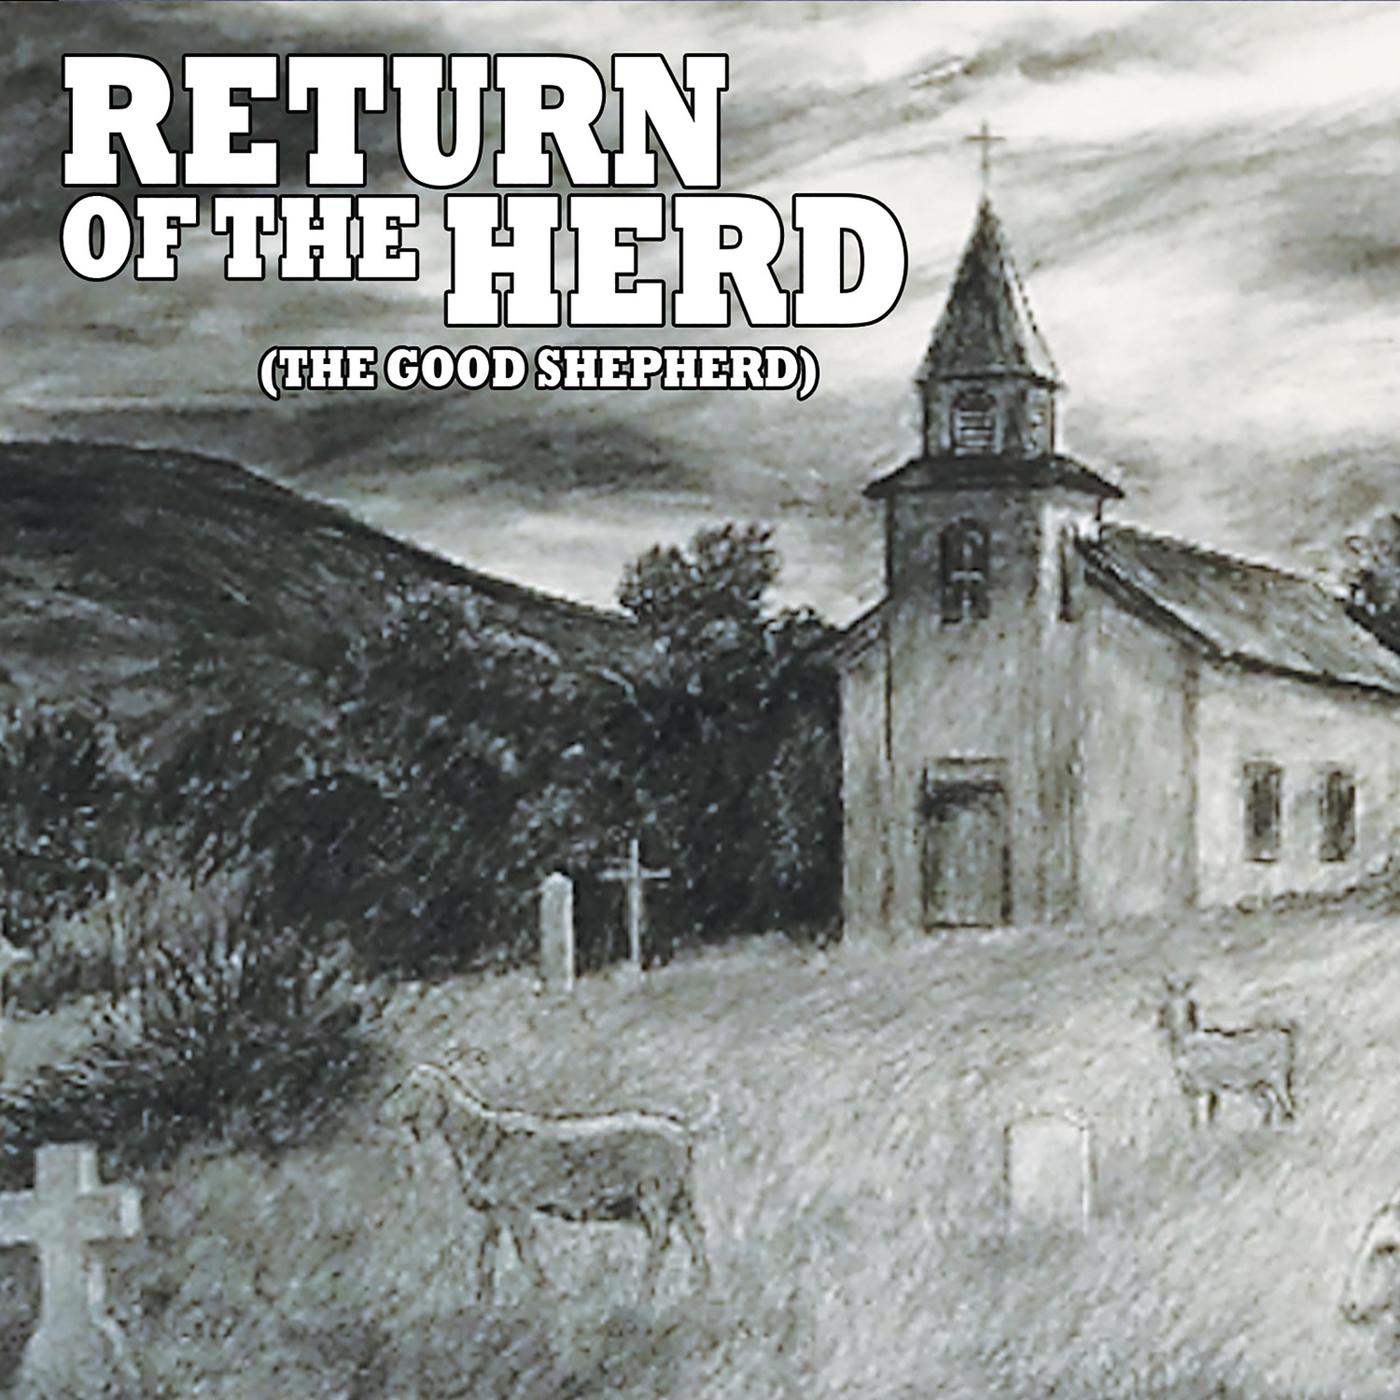 Return of the Herd